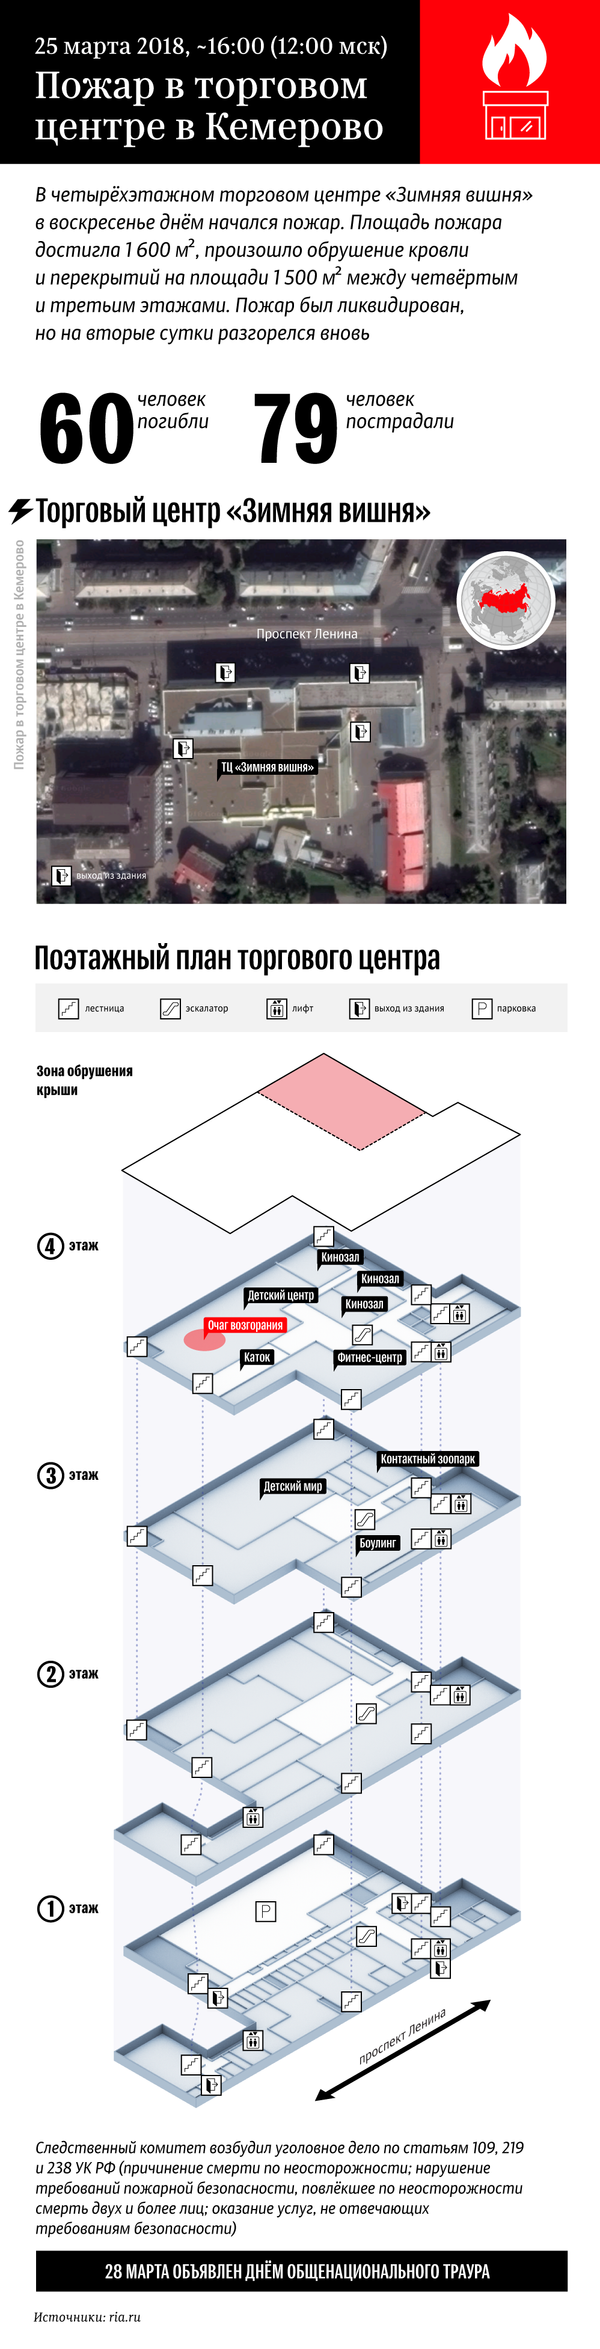 Пожар в торговом центре в Кемерово – инфографика на sputnik.by - Sputnik Беларусь